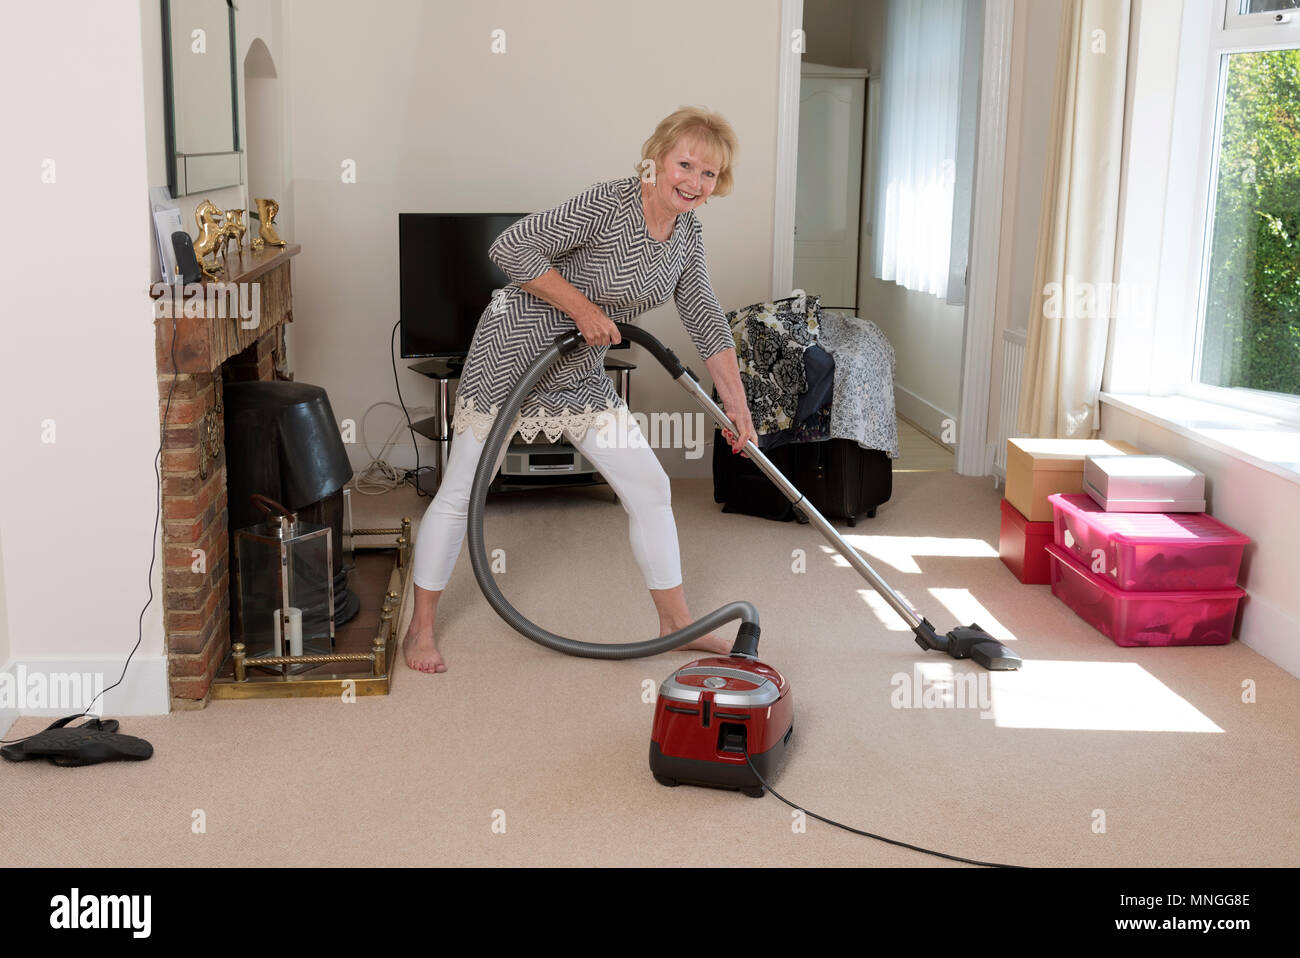 Déménagement, femme à l'aide d'un aspirateur pour aspirateur très hoover le tapis avant de déménager hors de la propriété. Banque D'Images